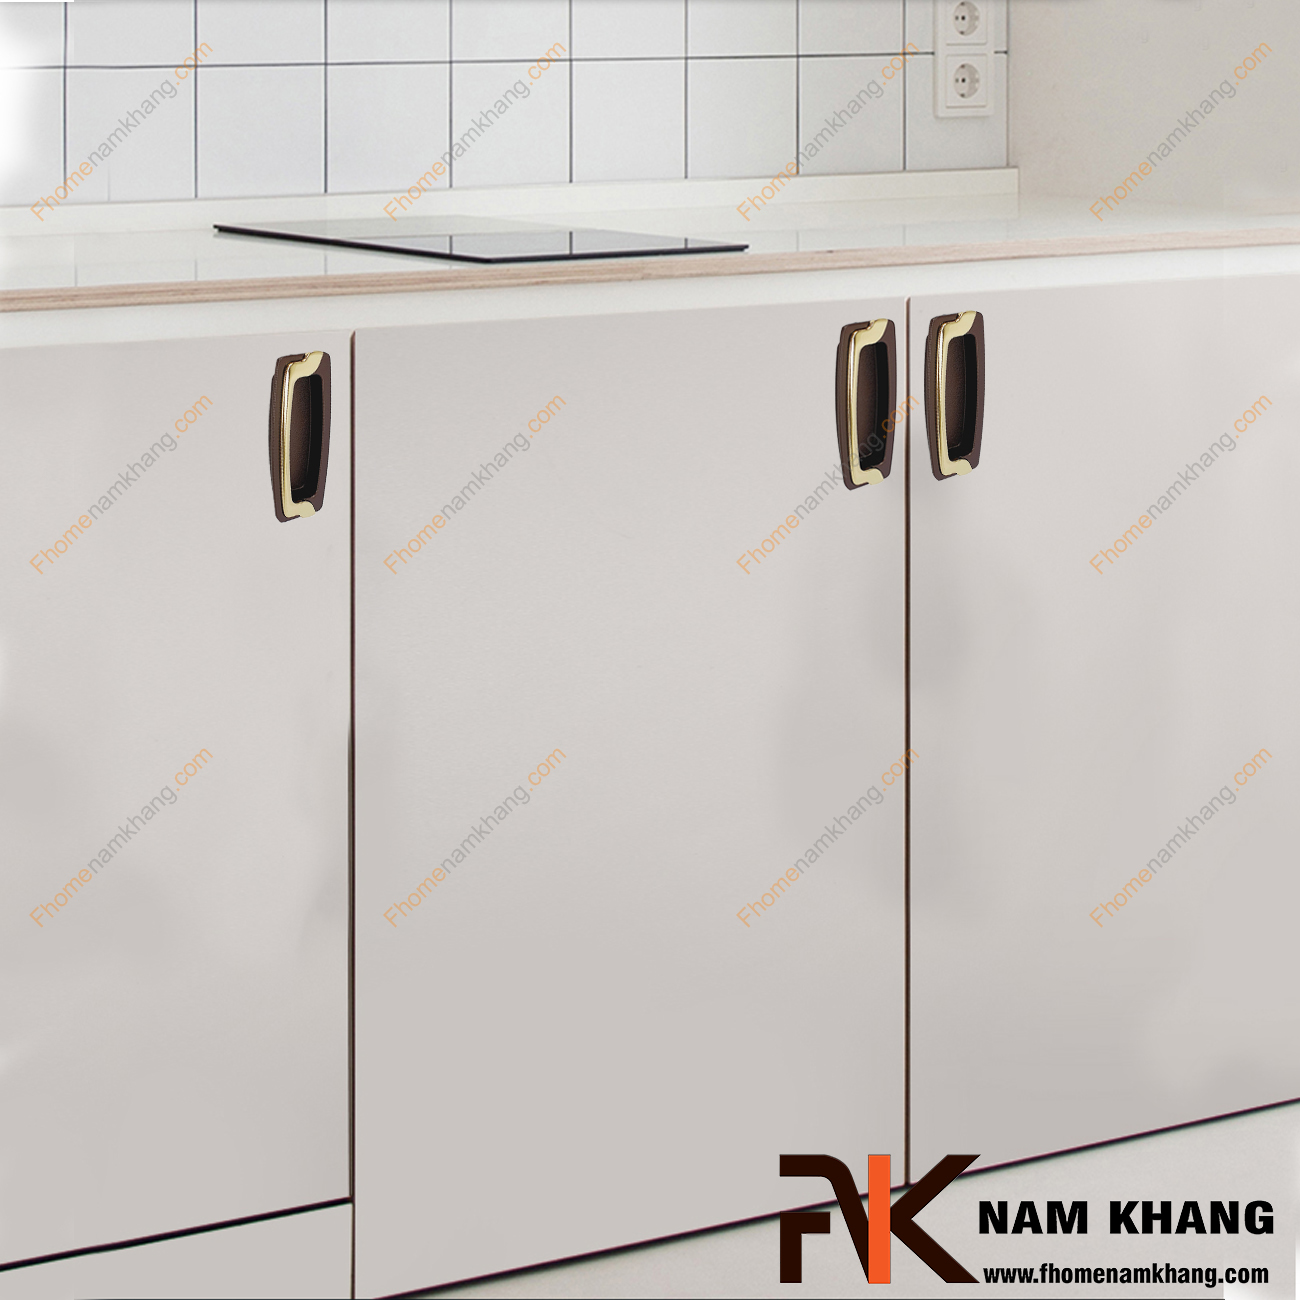 Tay nắm âm tủ nâu vàng NK064-96NV là loại tay nắm chuyên dùng cho các loại tủ đặt ở những nơi có không gian hạn chế hoặc dùng để nâng cao tính thẫm mỹ của sản phẩm